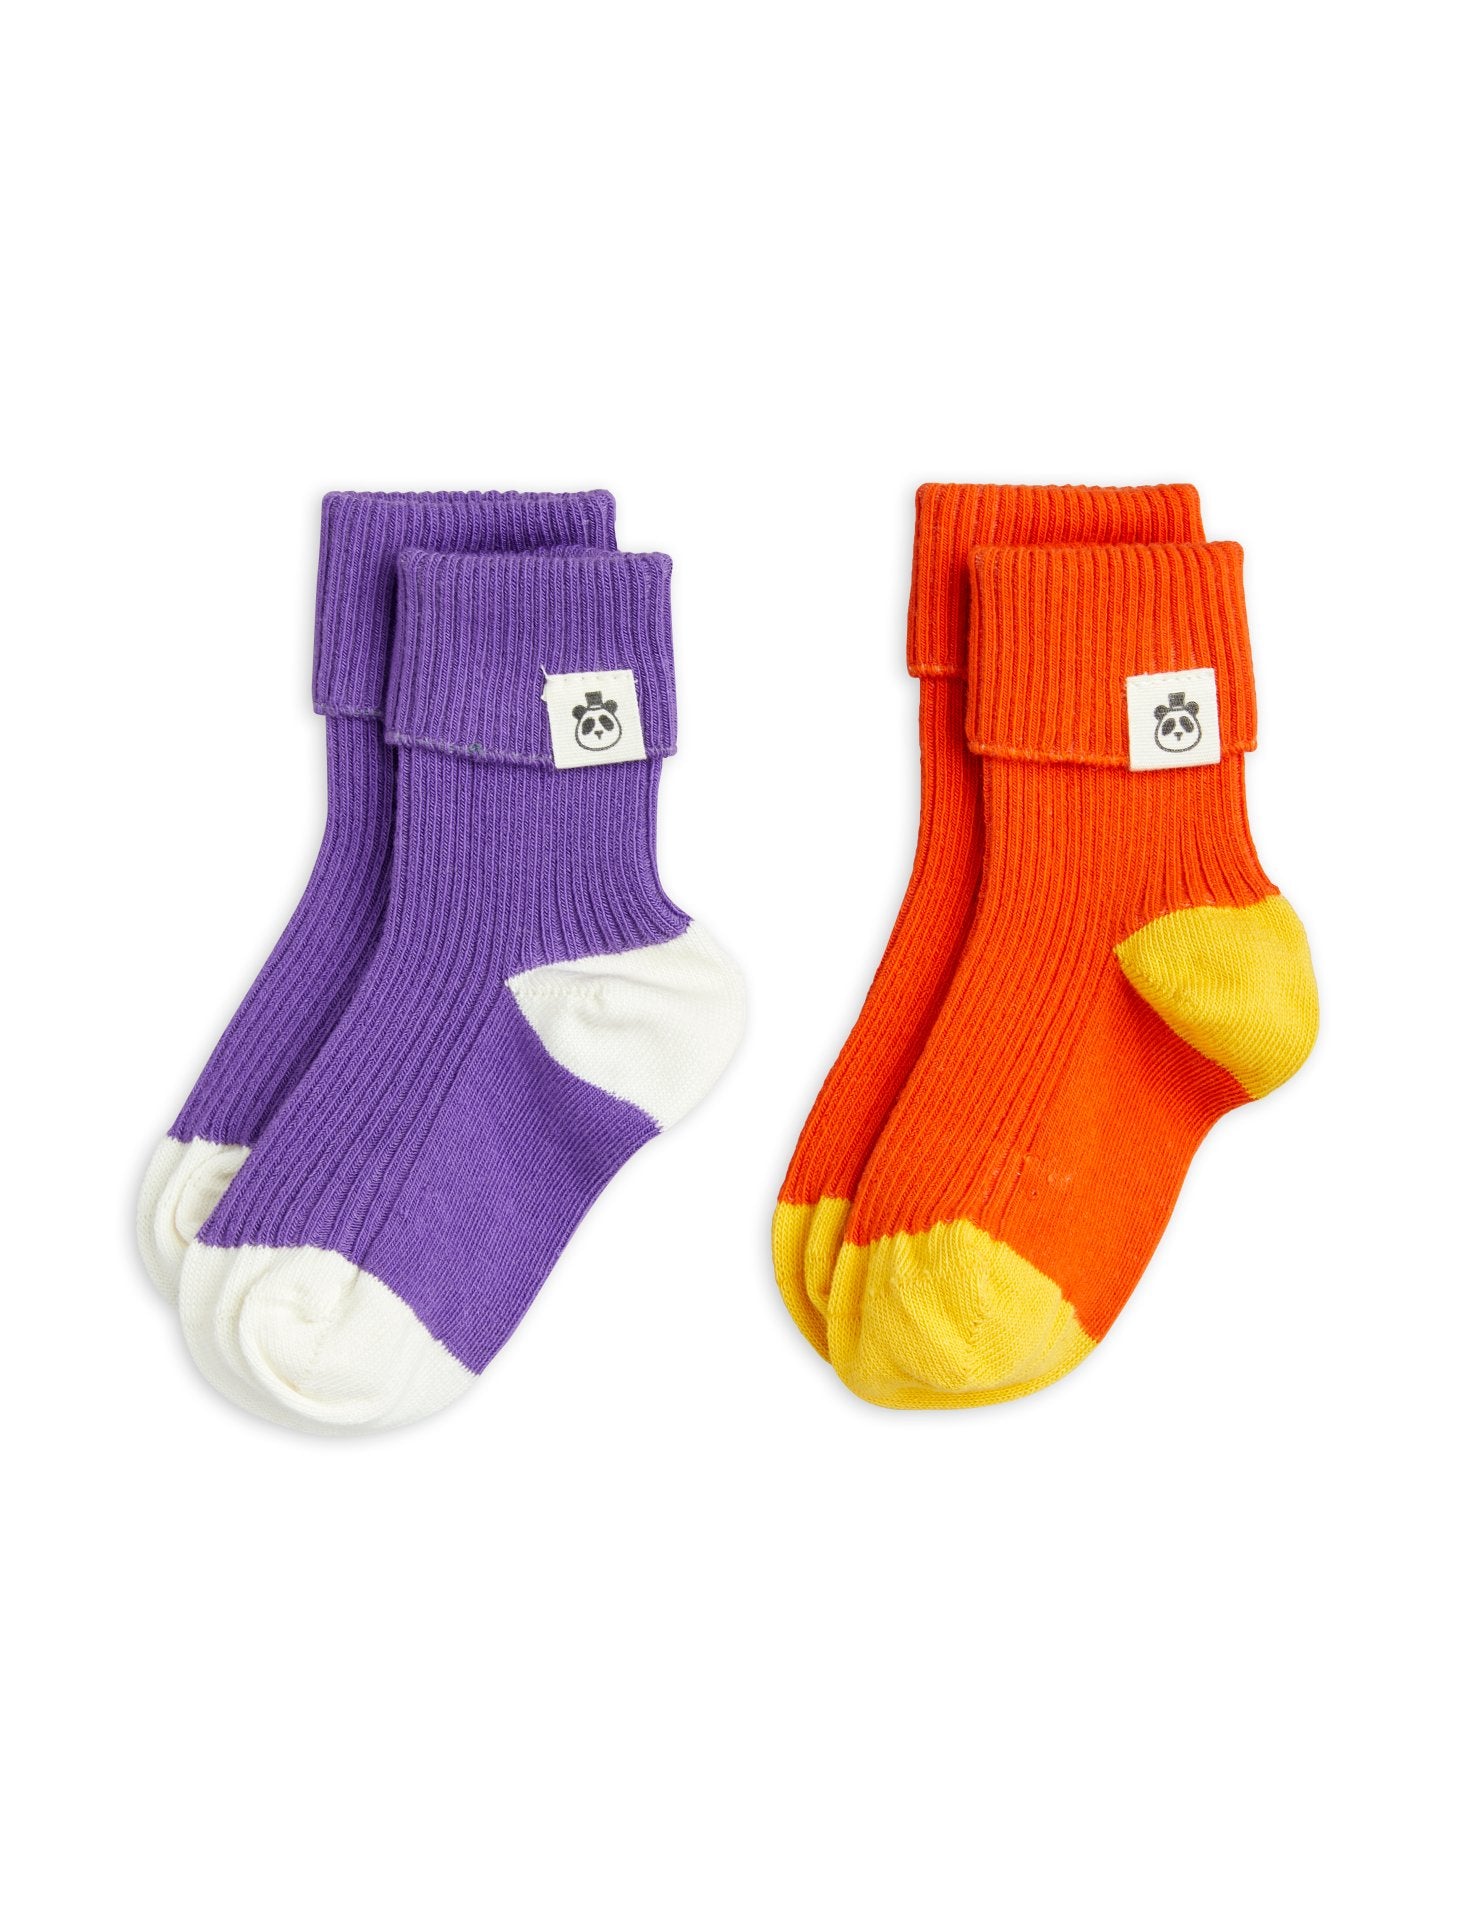 Baby socks 2-pack